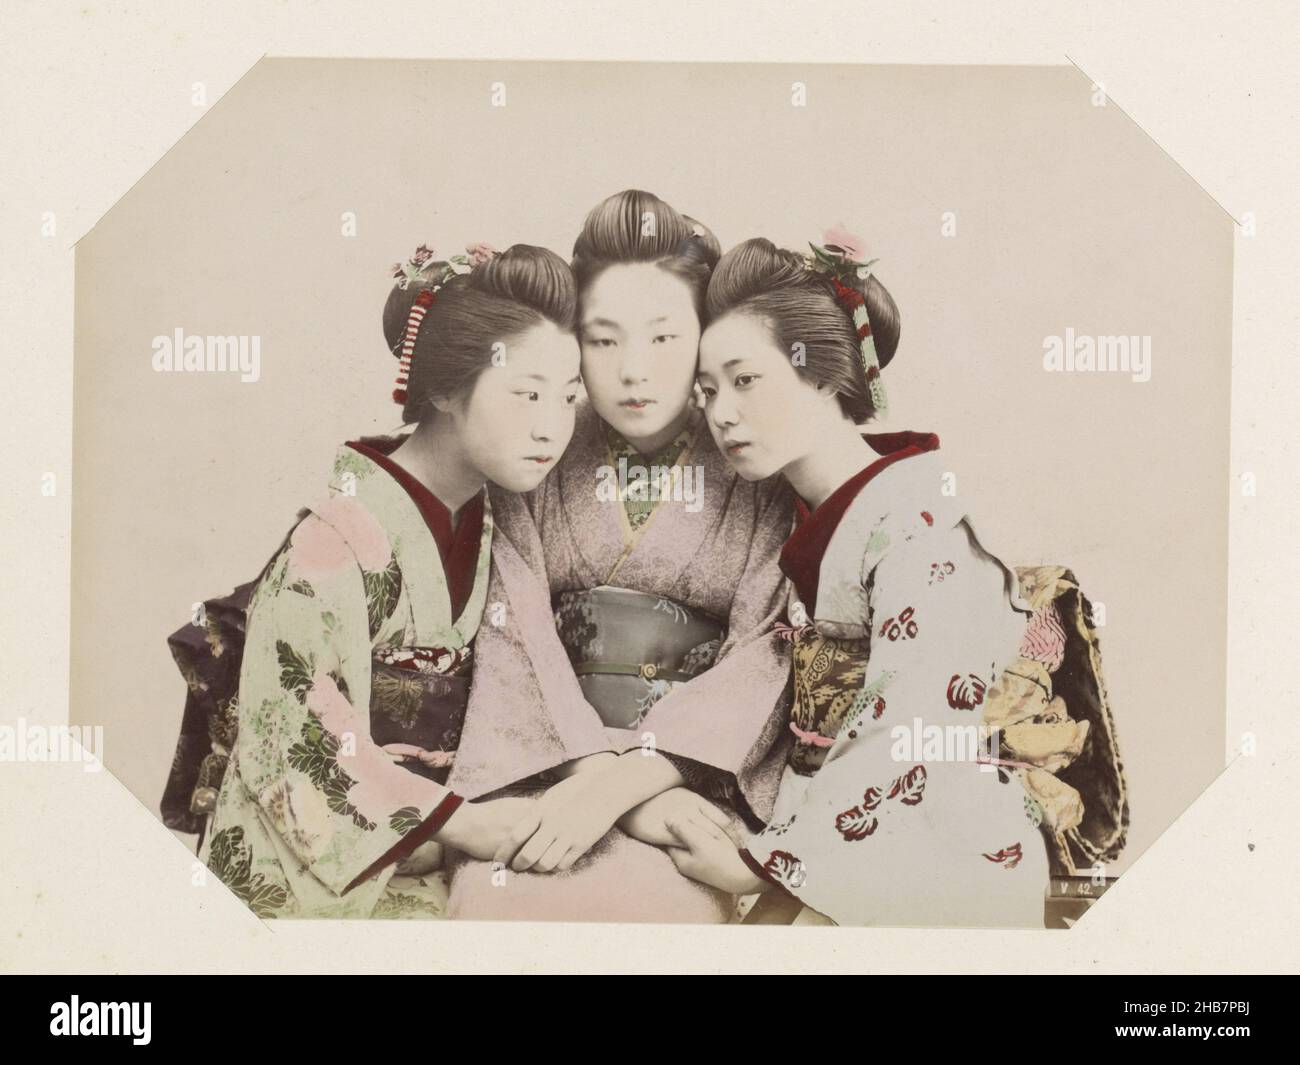 Portrait de groupe de trois filles japonaises, chant des filles (titre sur objet), partie de photo album des enregistrements de sites au Japon et des portraits de studio., anonyme, Japon, c.1870 - c.1900, support photographique, peinture (revêtement), imprimé albumine, hauteur 199 mm × largeur 265 mm Banque D'Images